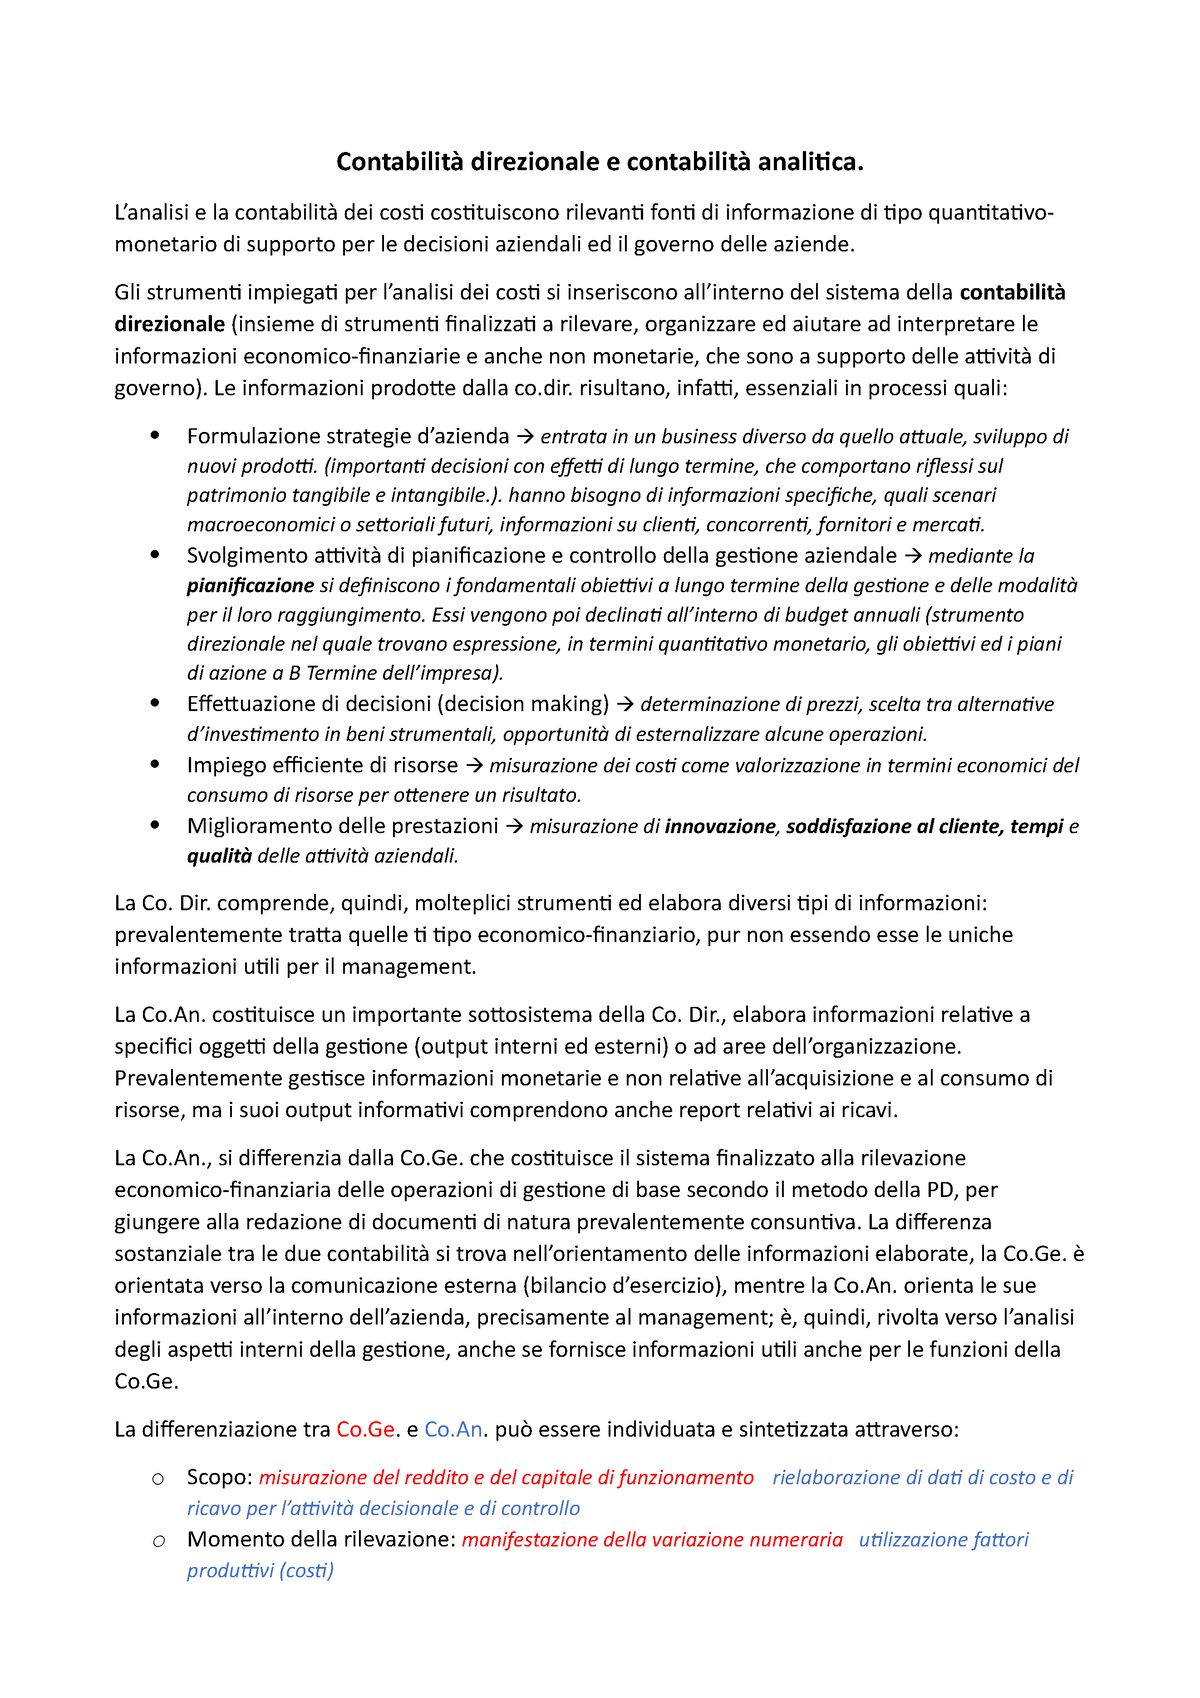 Appunti Cd G bil ecc - MISURAZIONE DELL'OUTPUT La misurazione della  performance nelle aziende - Studocu